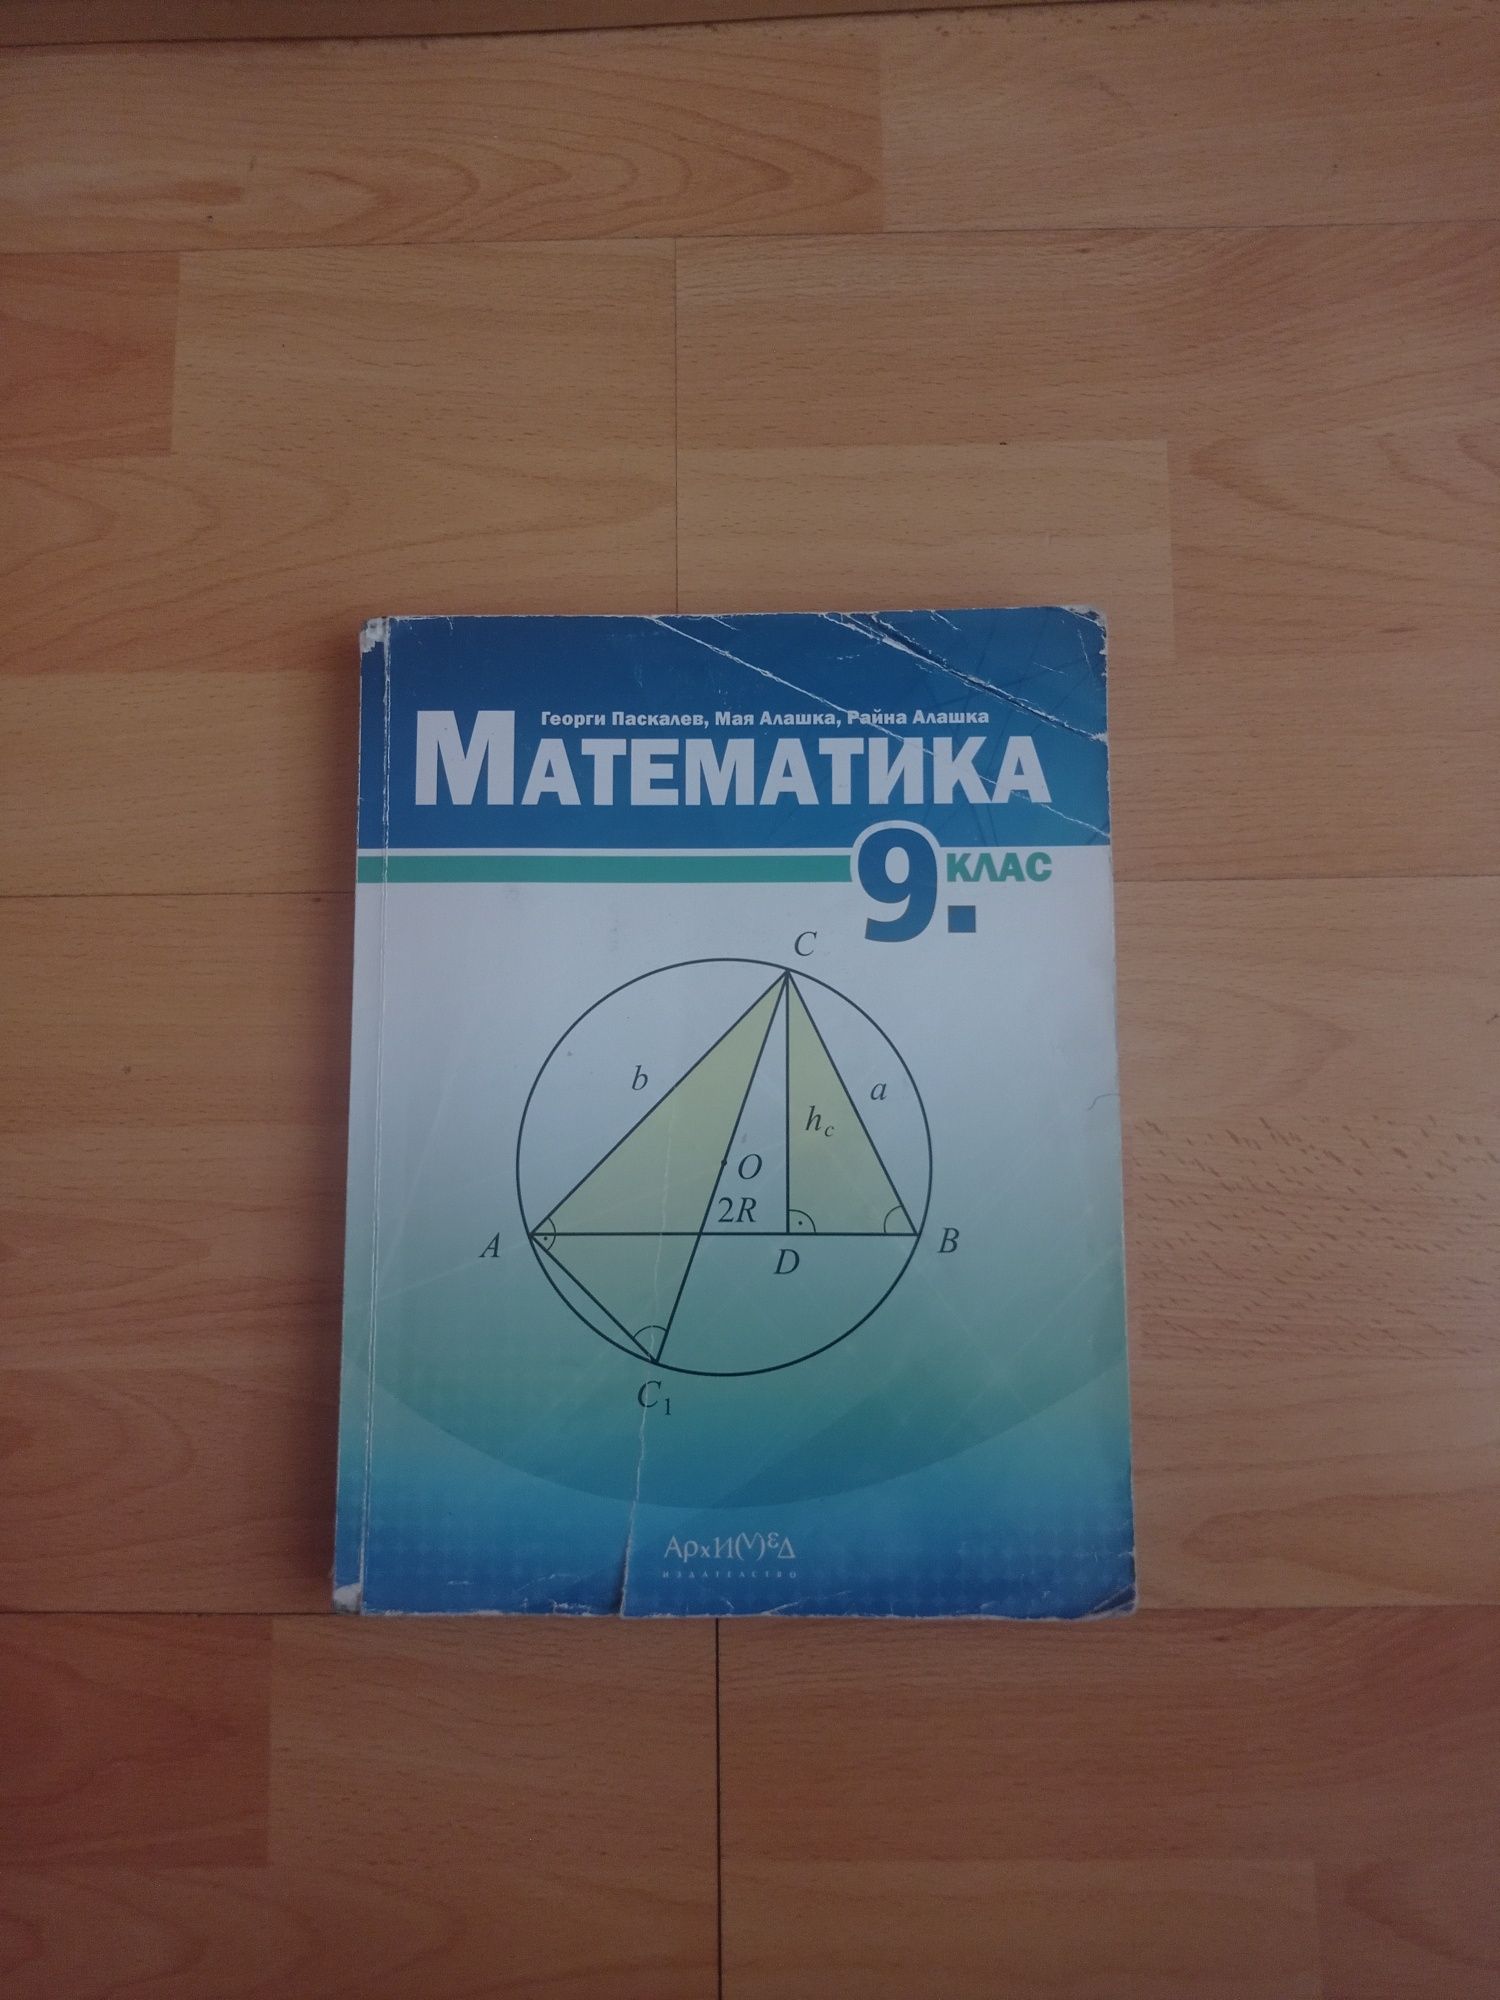 Учебници по Физика и Математика